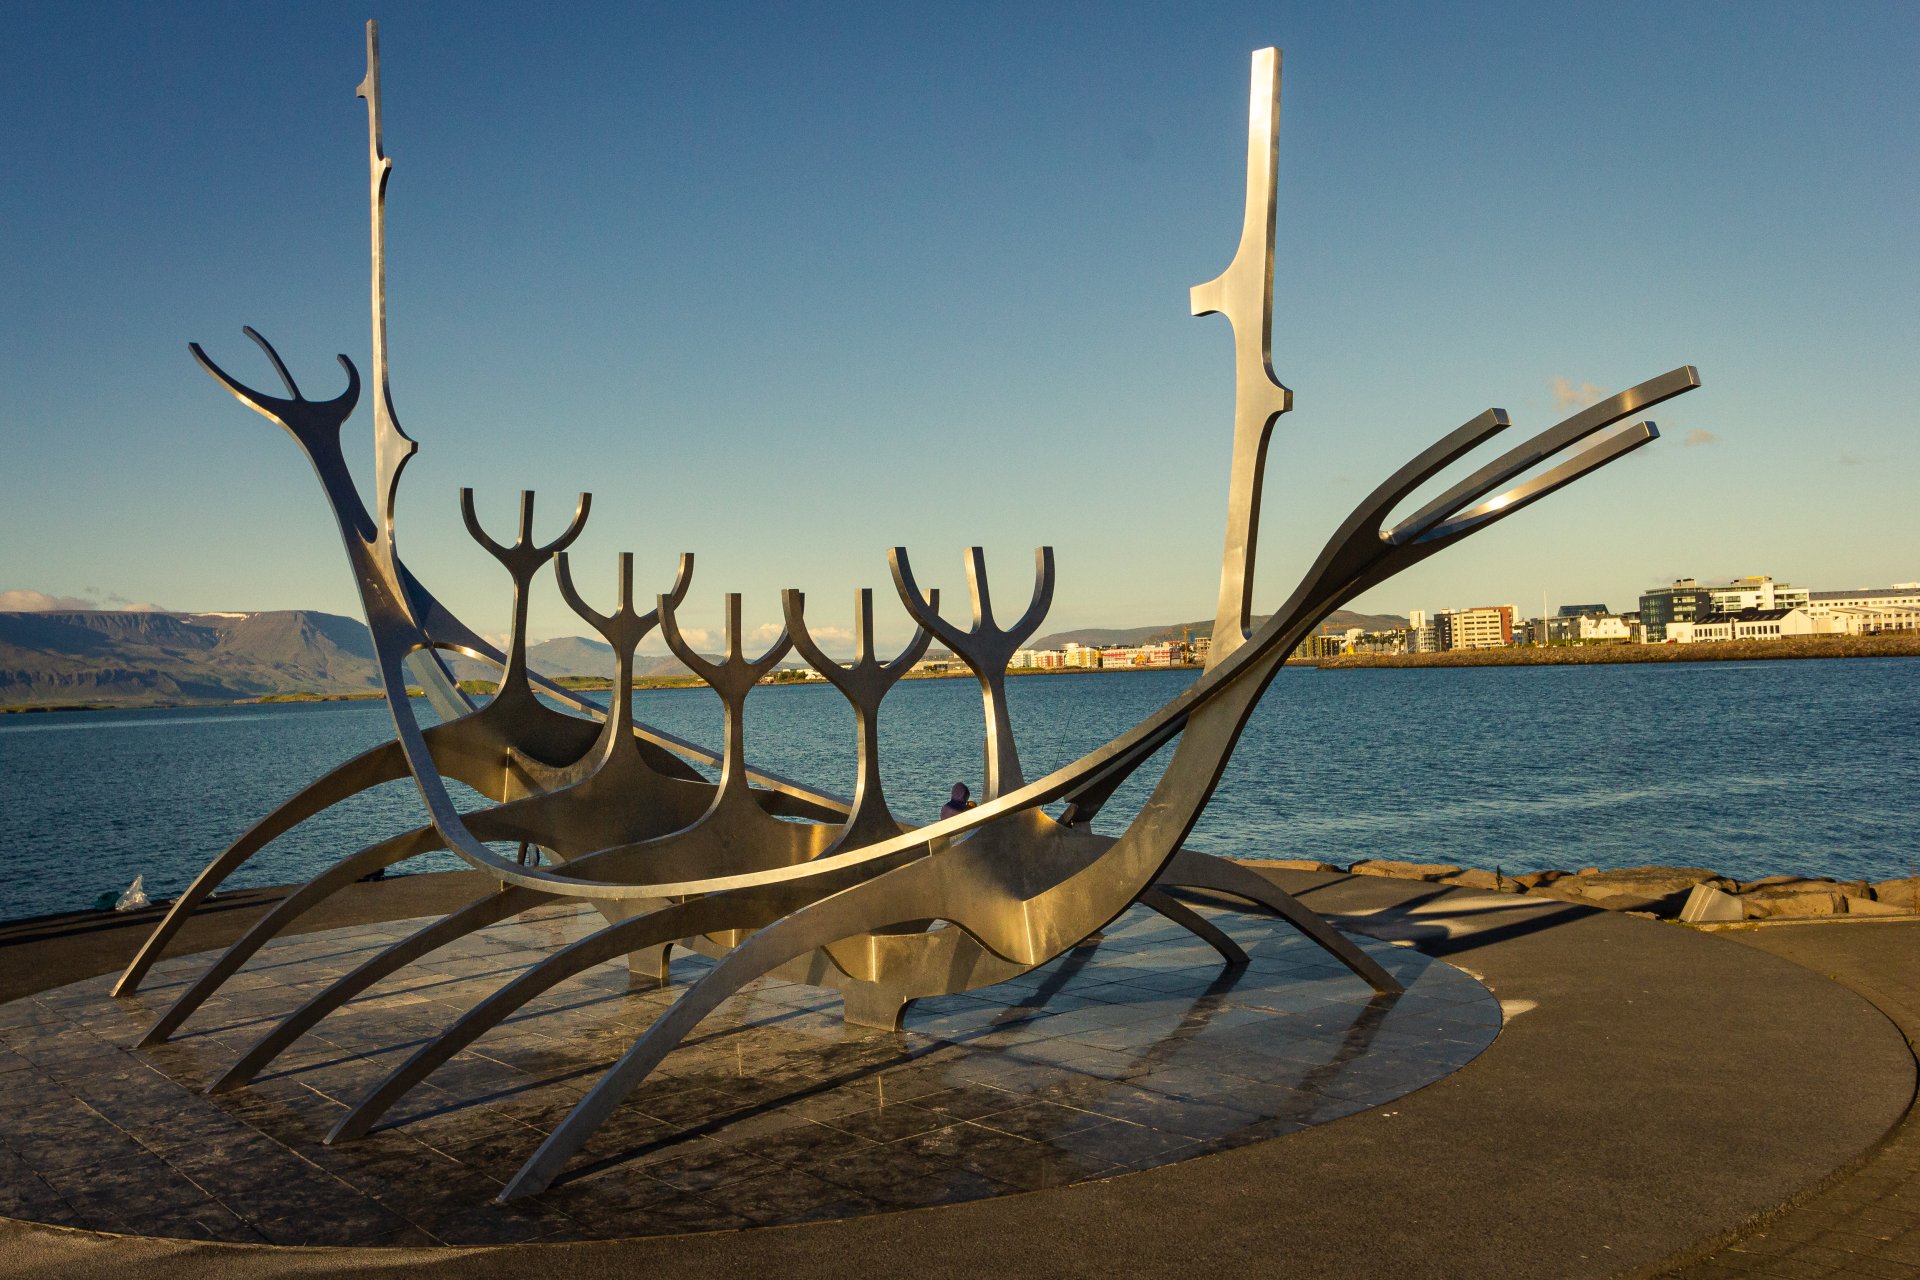 Sun Voyager czyli najbardziej znana rzeźba w Reykjavíku